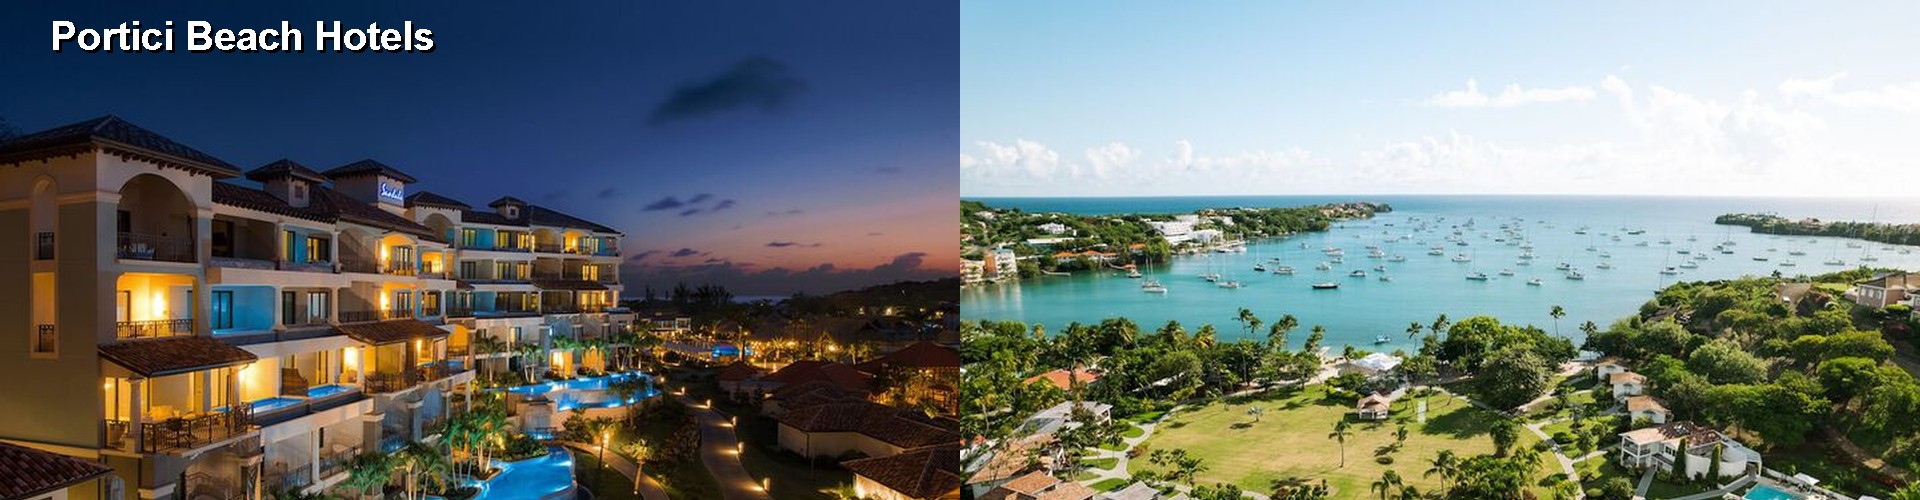 5 Best Hotels near Portici Beach